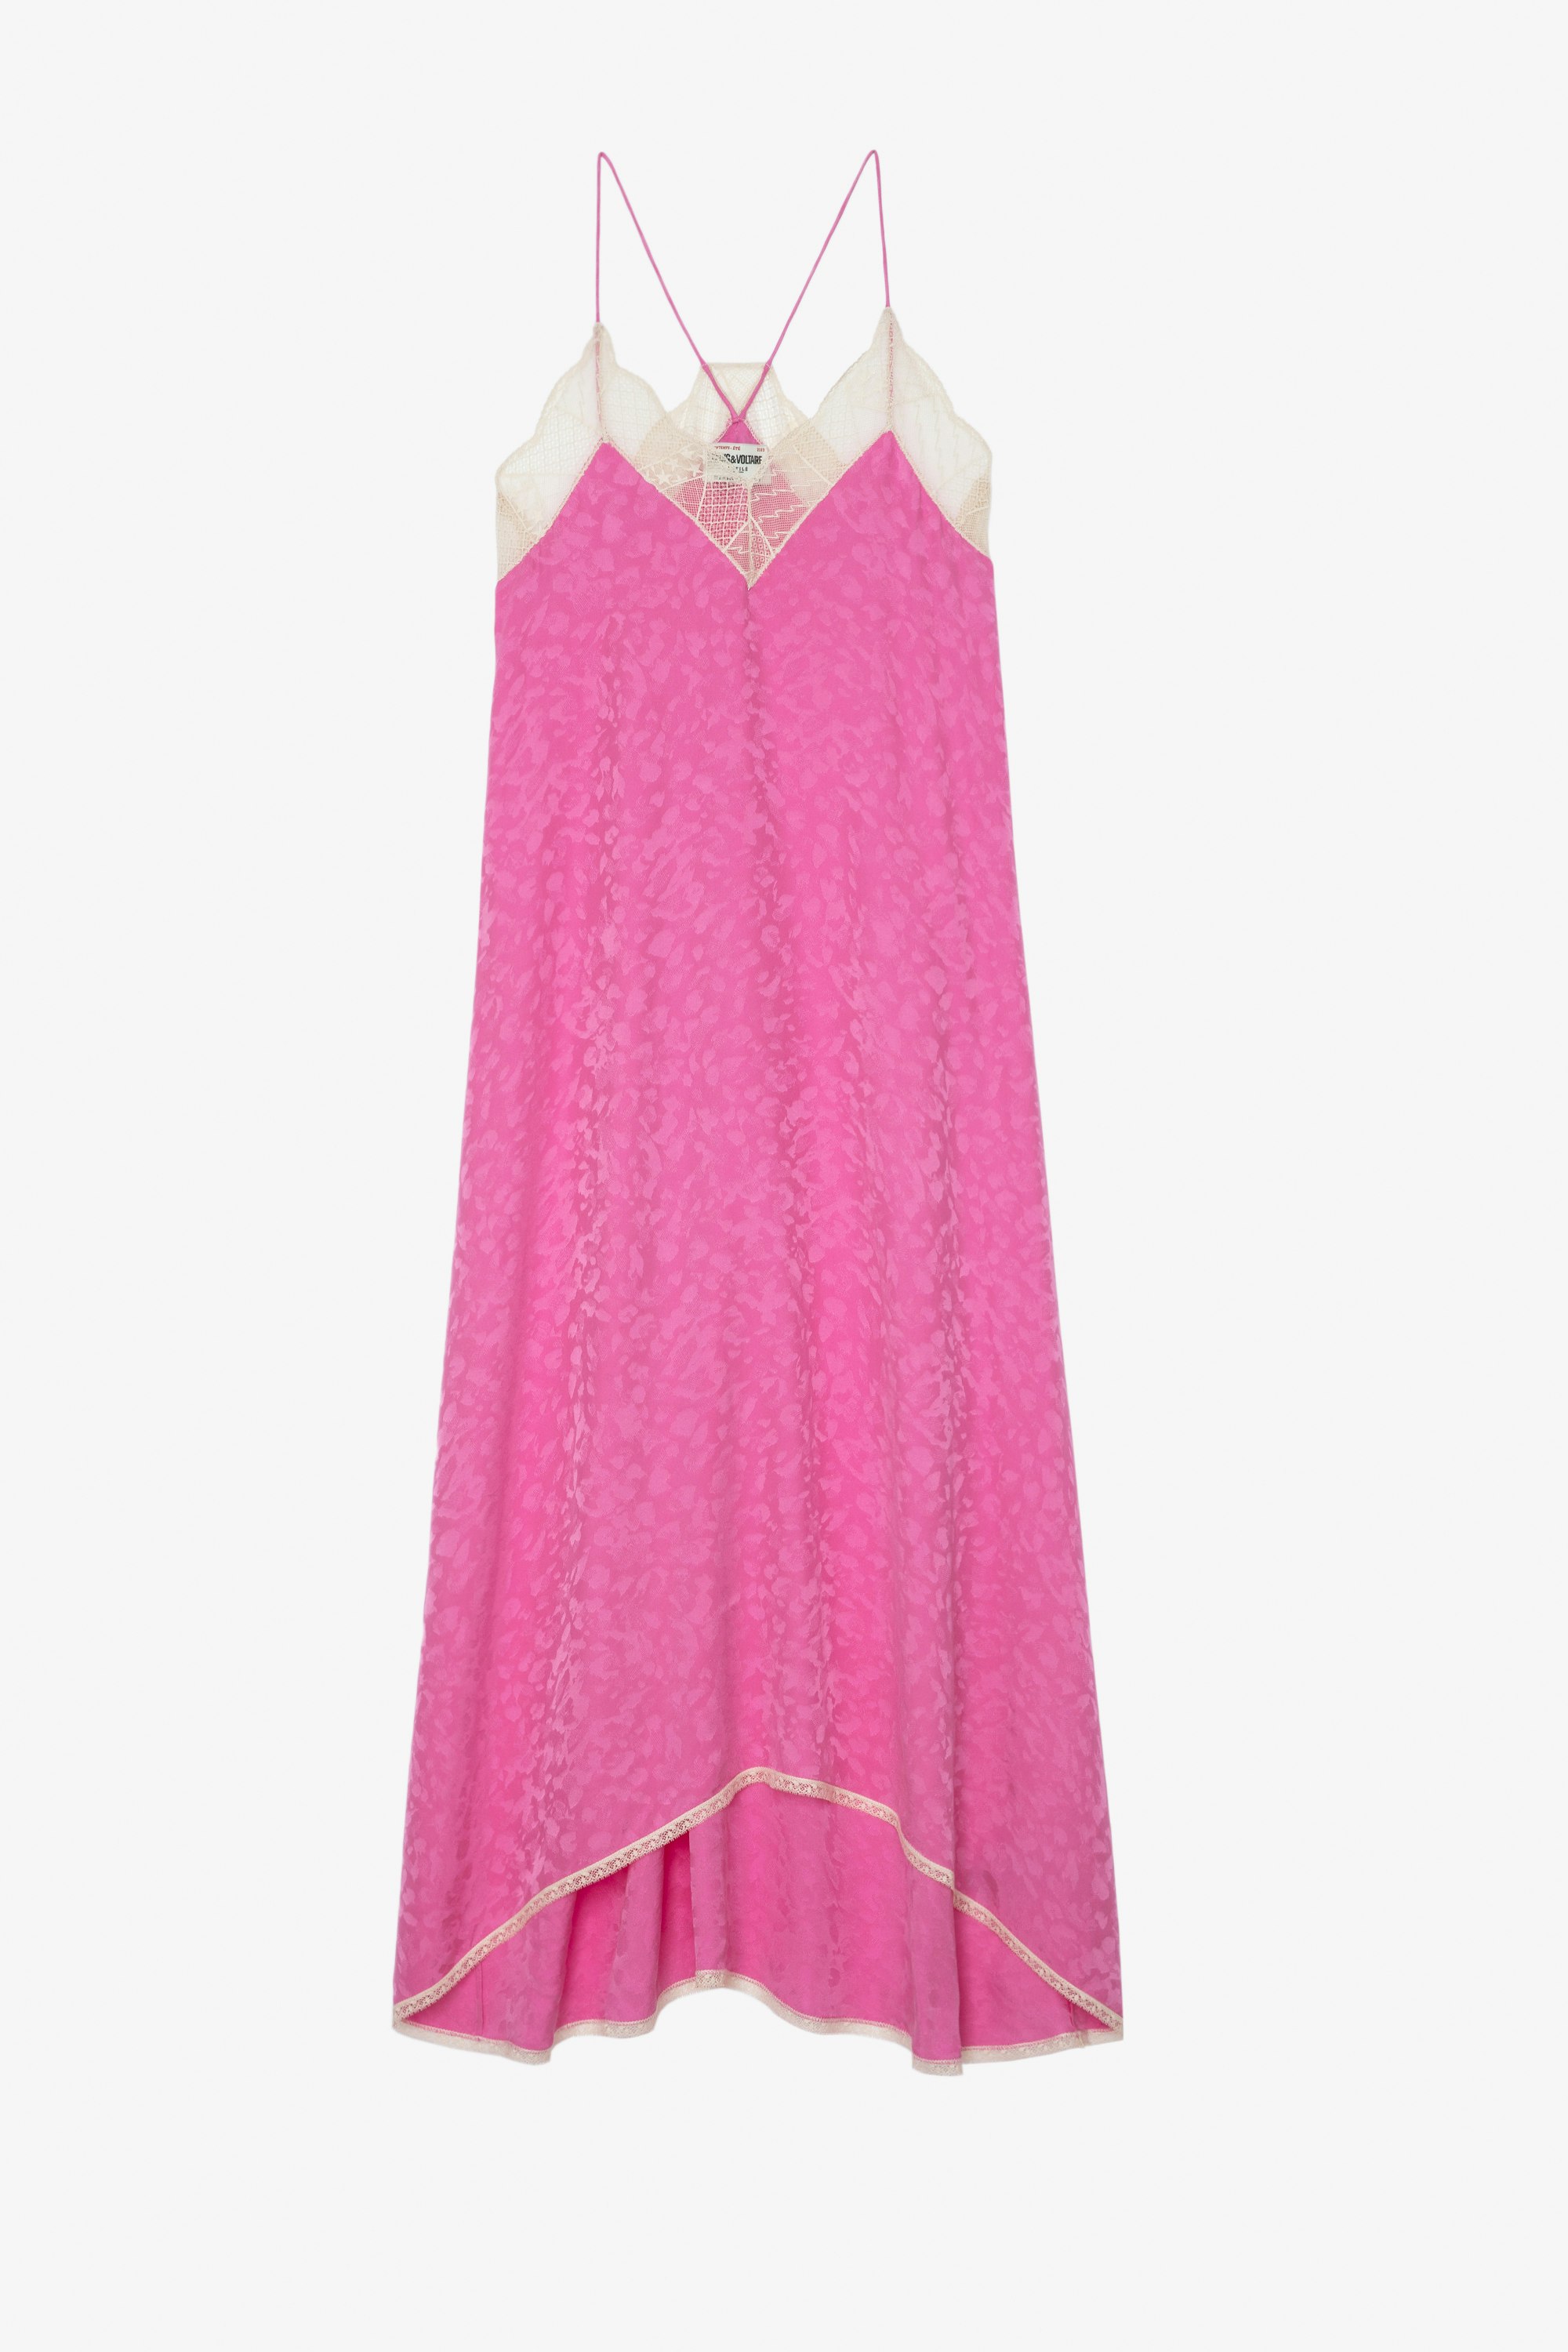 Risty Silk Dress ピンクレオパード柄 細いストラップ付きシルクマキシドレス レディース